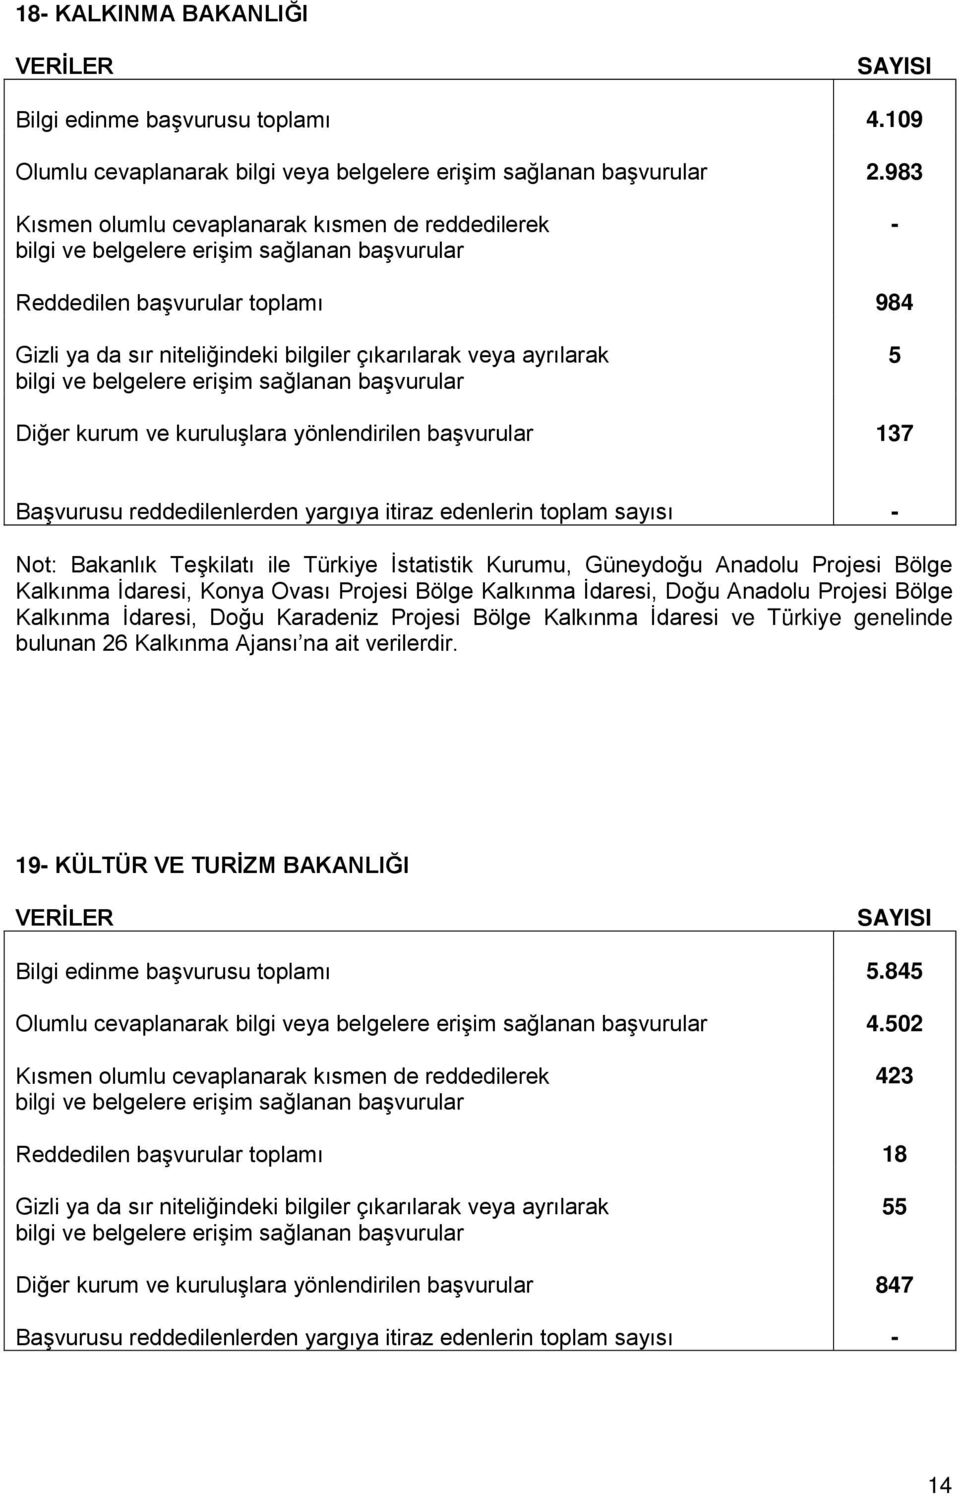 İstatistik Kurumu, Güneydoğu Anadolu Projesi Bölge Kalkınma İdaresi, Konya Ovası Projesi Bölge Kalkınma İdaresi, Doğu Anadolu Projesi Bölge Kalkınma İdaresi, Doğu Karadeniz Projesi Bölge Kalkınma